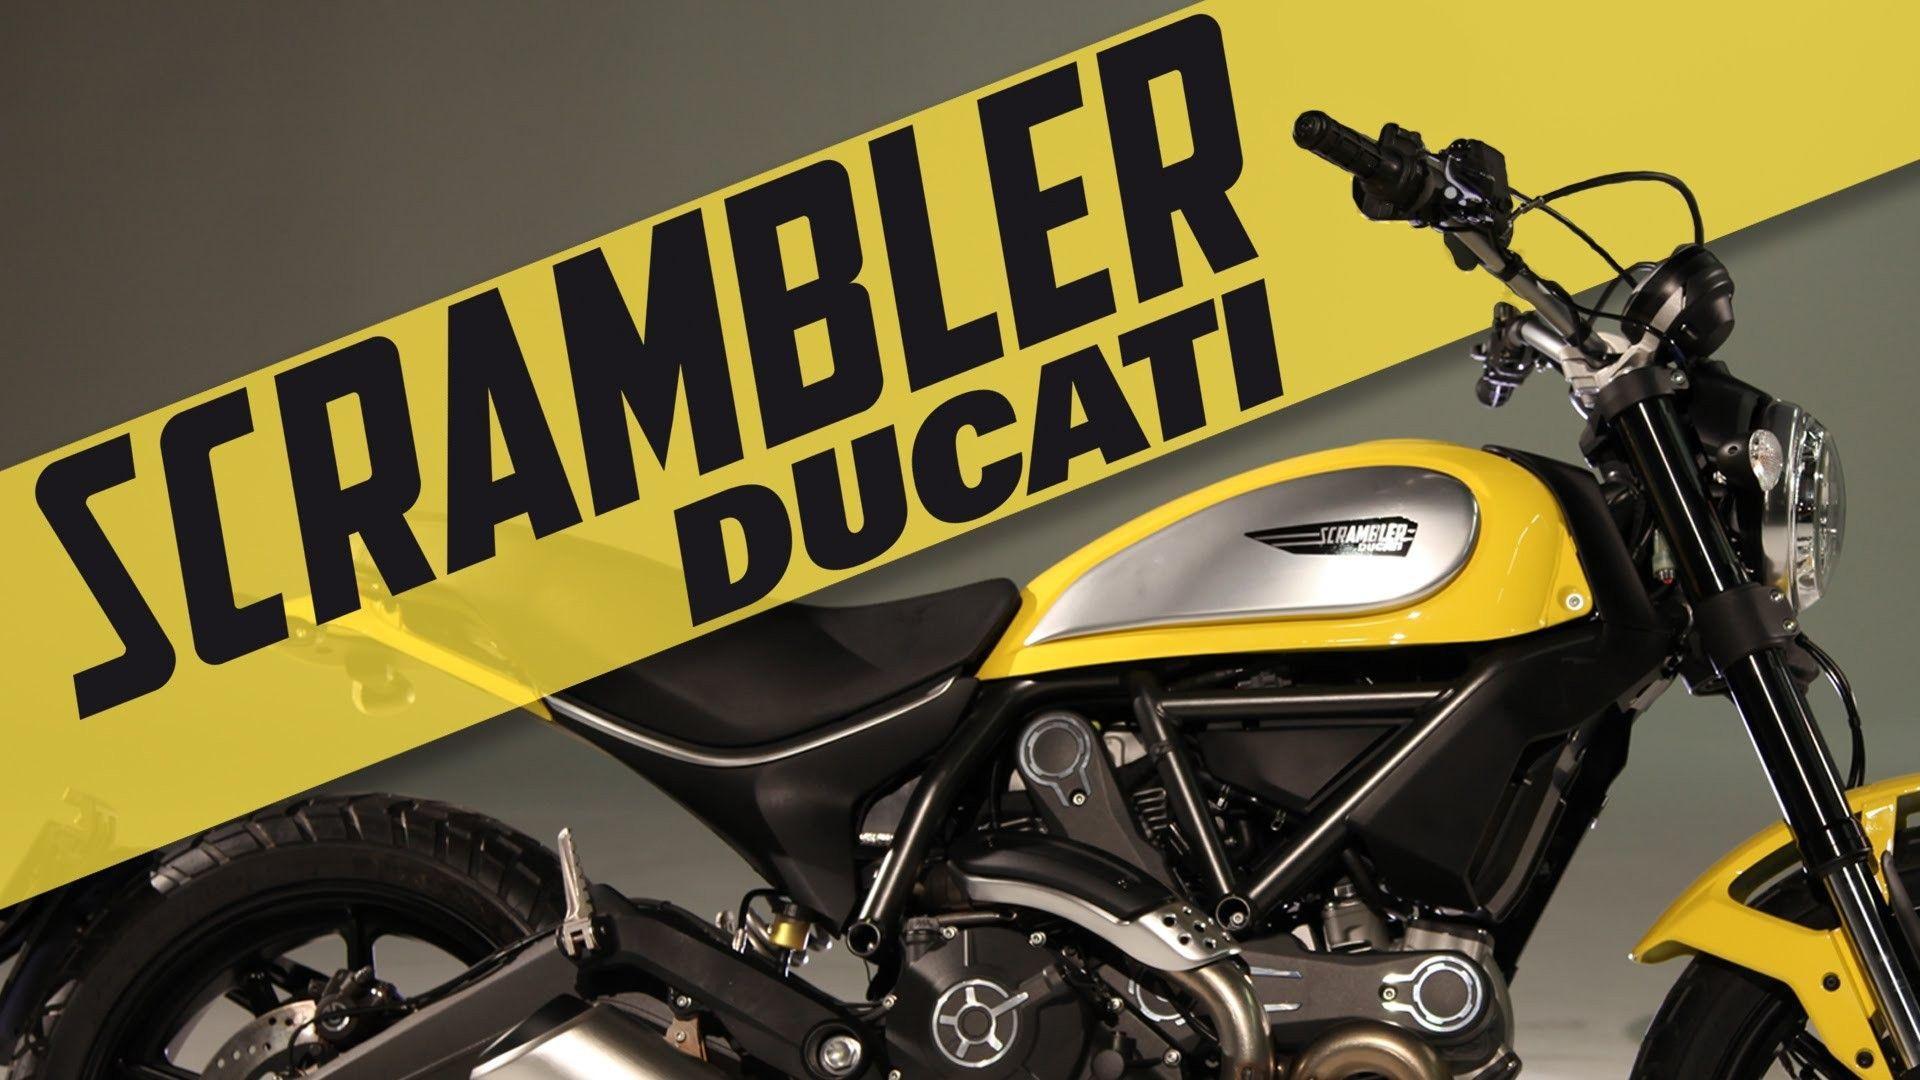 Motorcycle racing Ducati Scrambler wallpaper and image